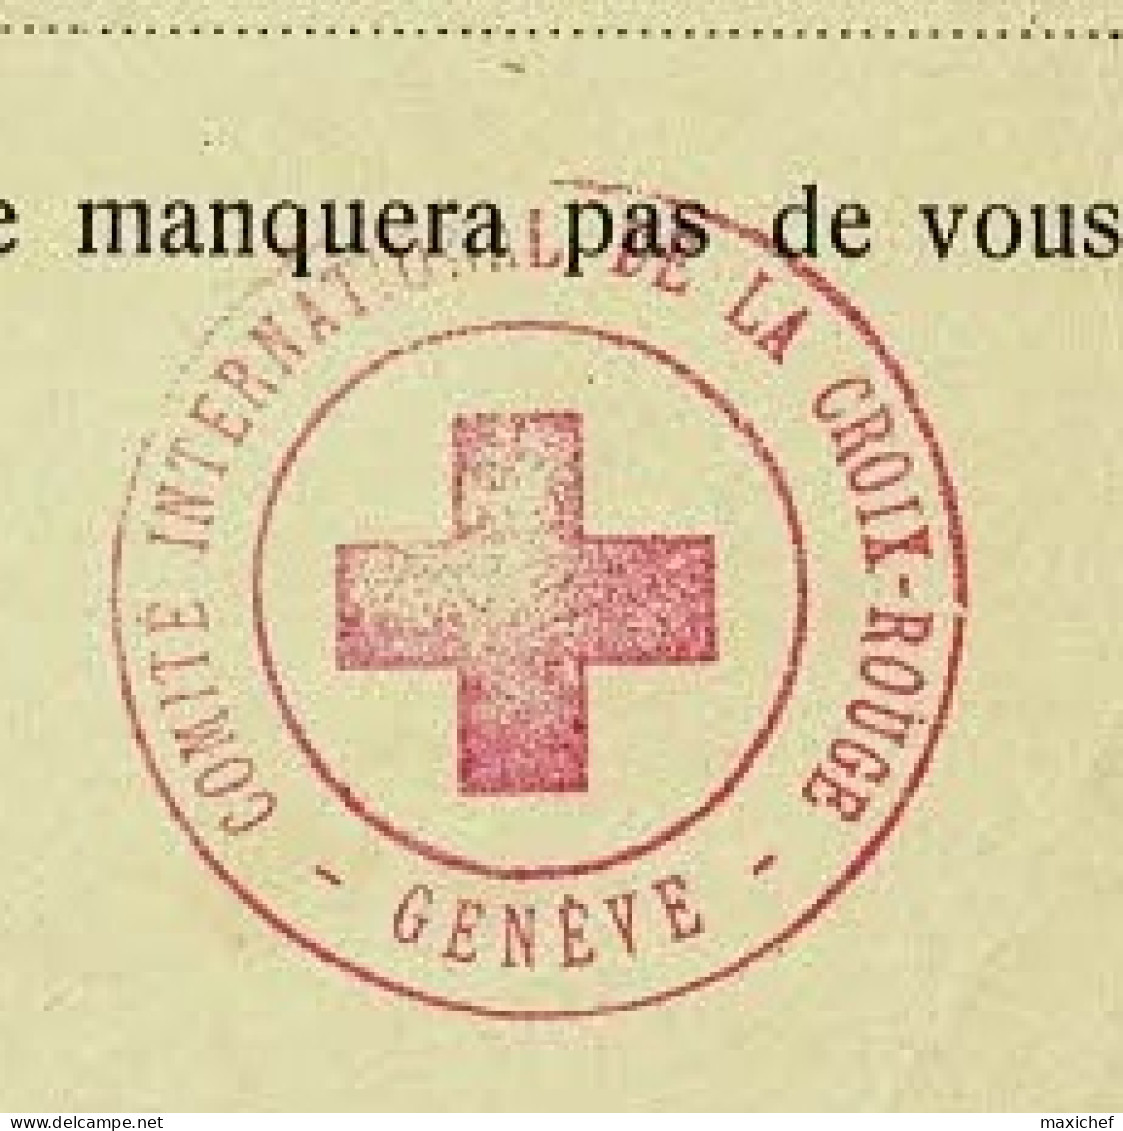 Carte Franc De Port  "Comité International Croix Rouge" Cachets Croix Gammée & Croix Rouge - Pas De Date - Rode Kruis